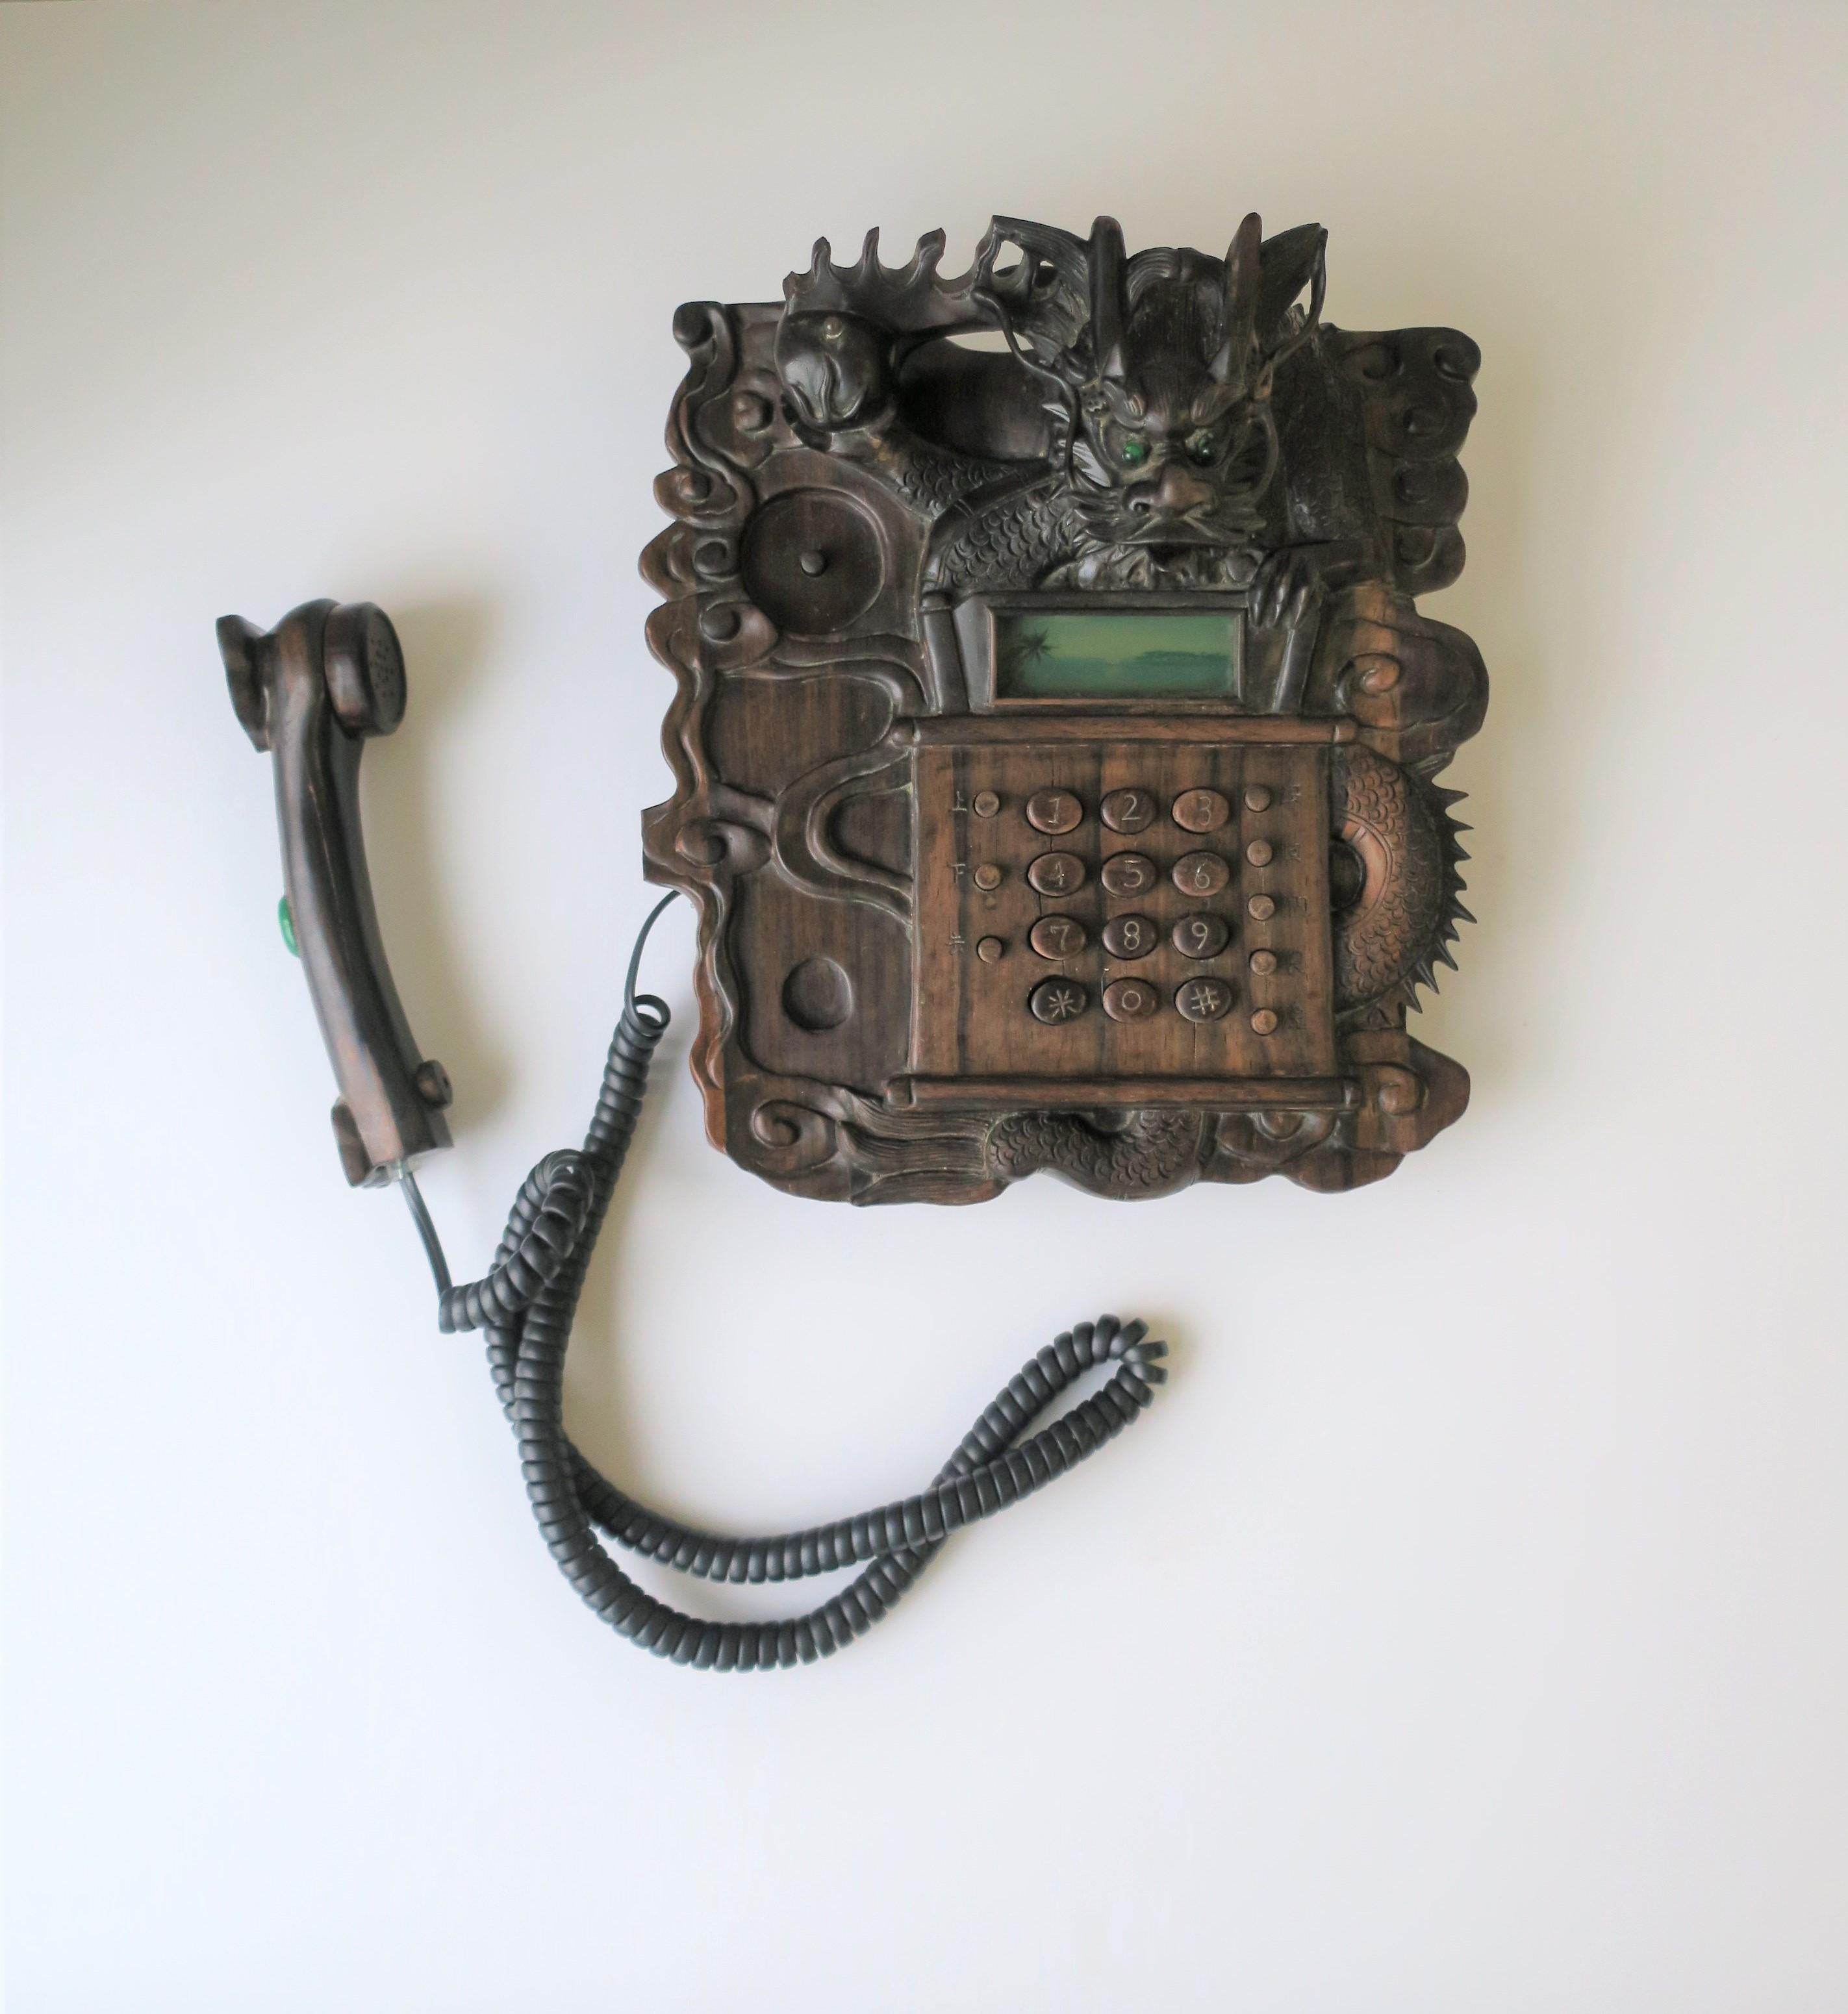 Un très beau, rare et exotique téléphone fixe chinois à dragon, vers les années 1980-1990. Le téléphone est en bois dur sculpté avec tous les détails d'un dragon (griffes, langue, cornes, queue, etc.). La poignée du téléphone comporte une magnifique